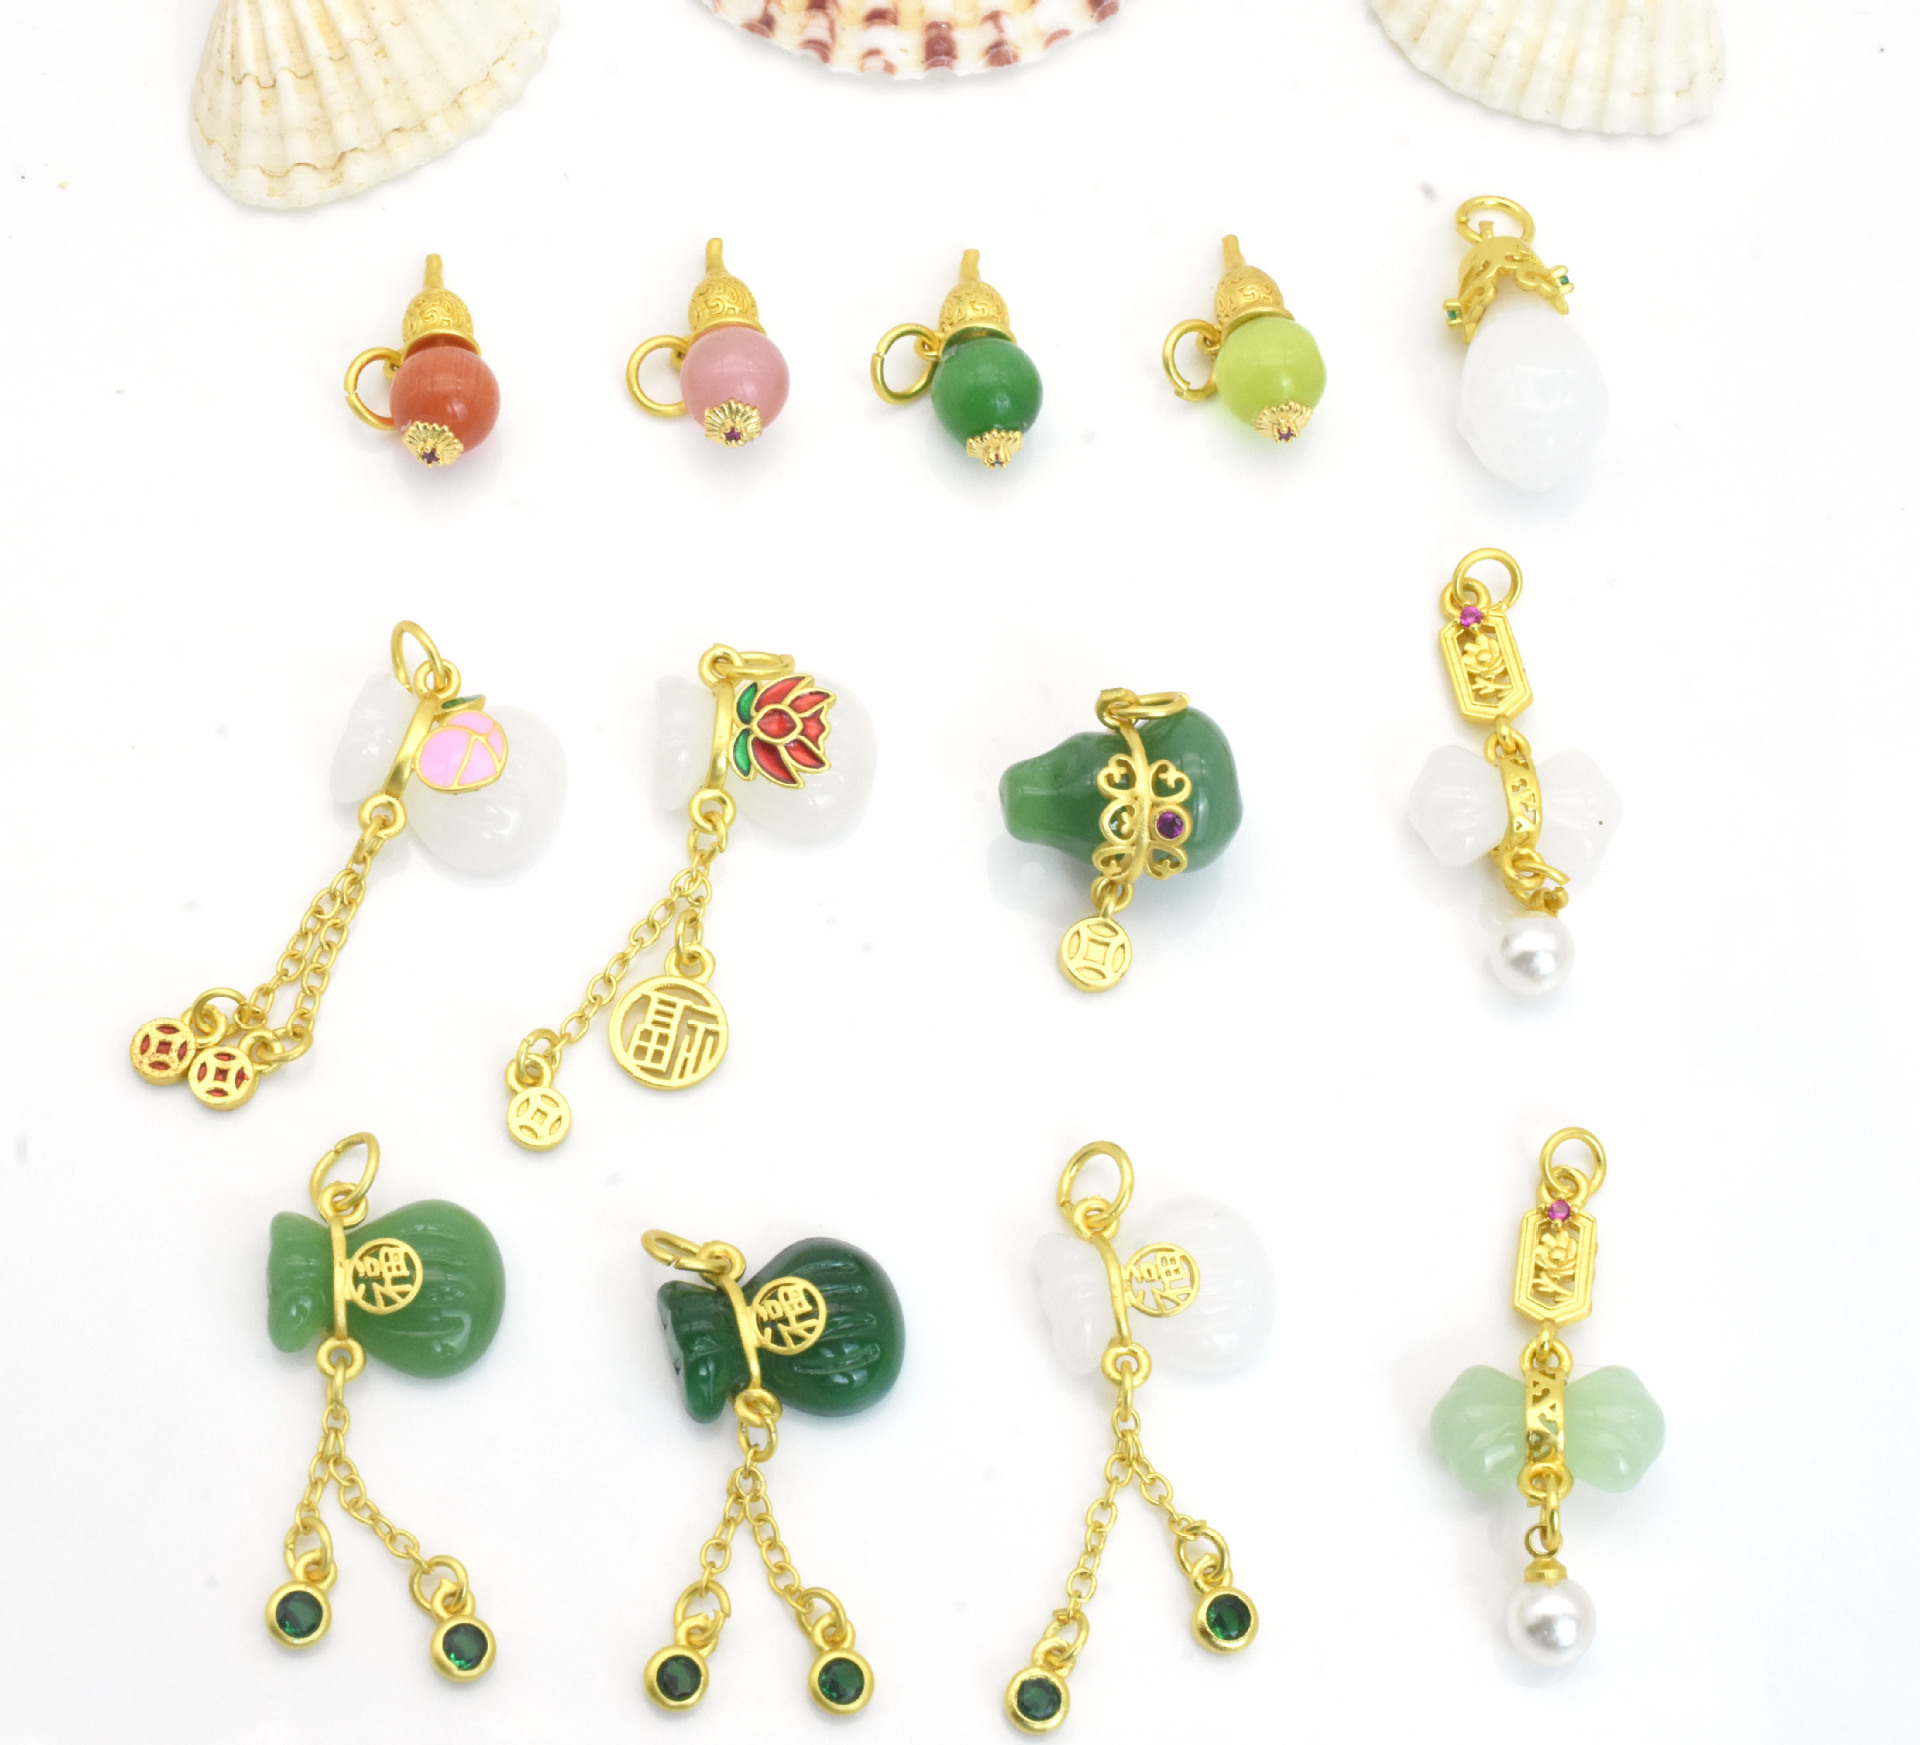 ancient style mosaic jade pendant gourd lucky bag pendant diy ornament bracelet necklace pendant accessories ornaments wholesale